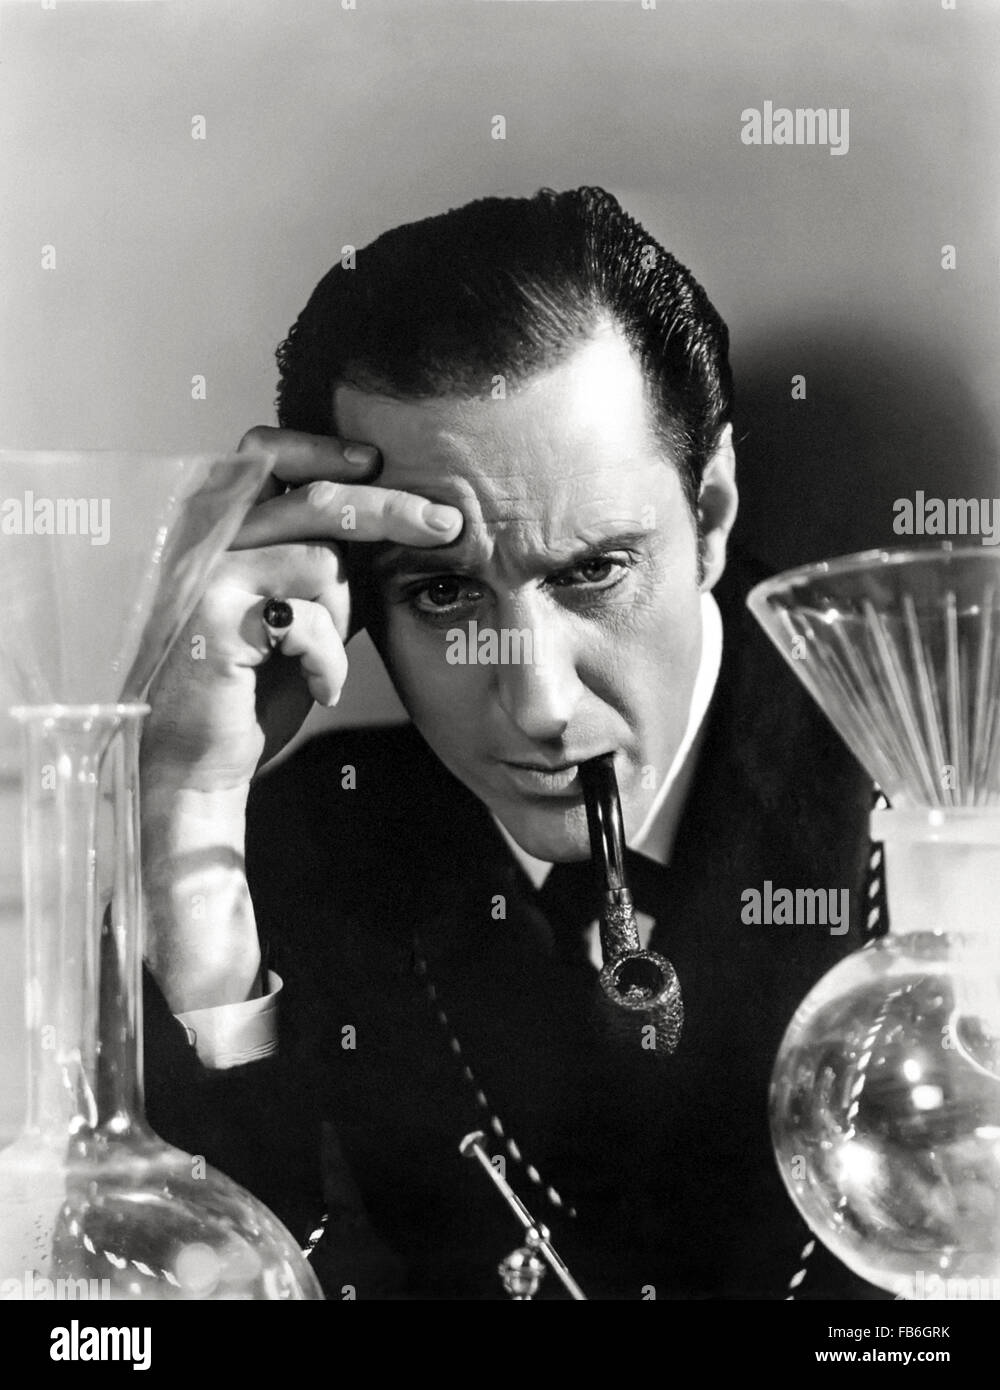 Werbung Foto zeigt Sherlock Holmes gespielt von Basil Rathbone Durchführung eines wissenschaftlichen Experiments, zur Förderung von "Sherlock Holmes und die Stimme des Terrors" veröffentlicht veröffentlicht in 1942. Stockfoto